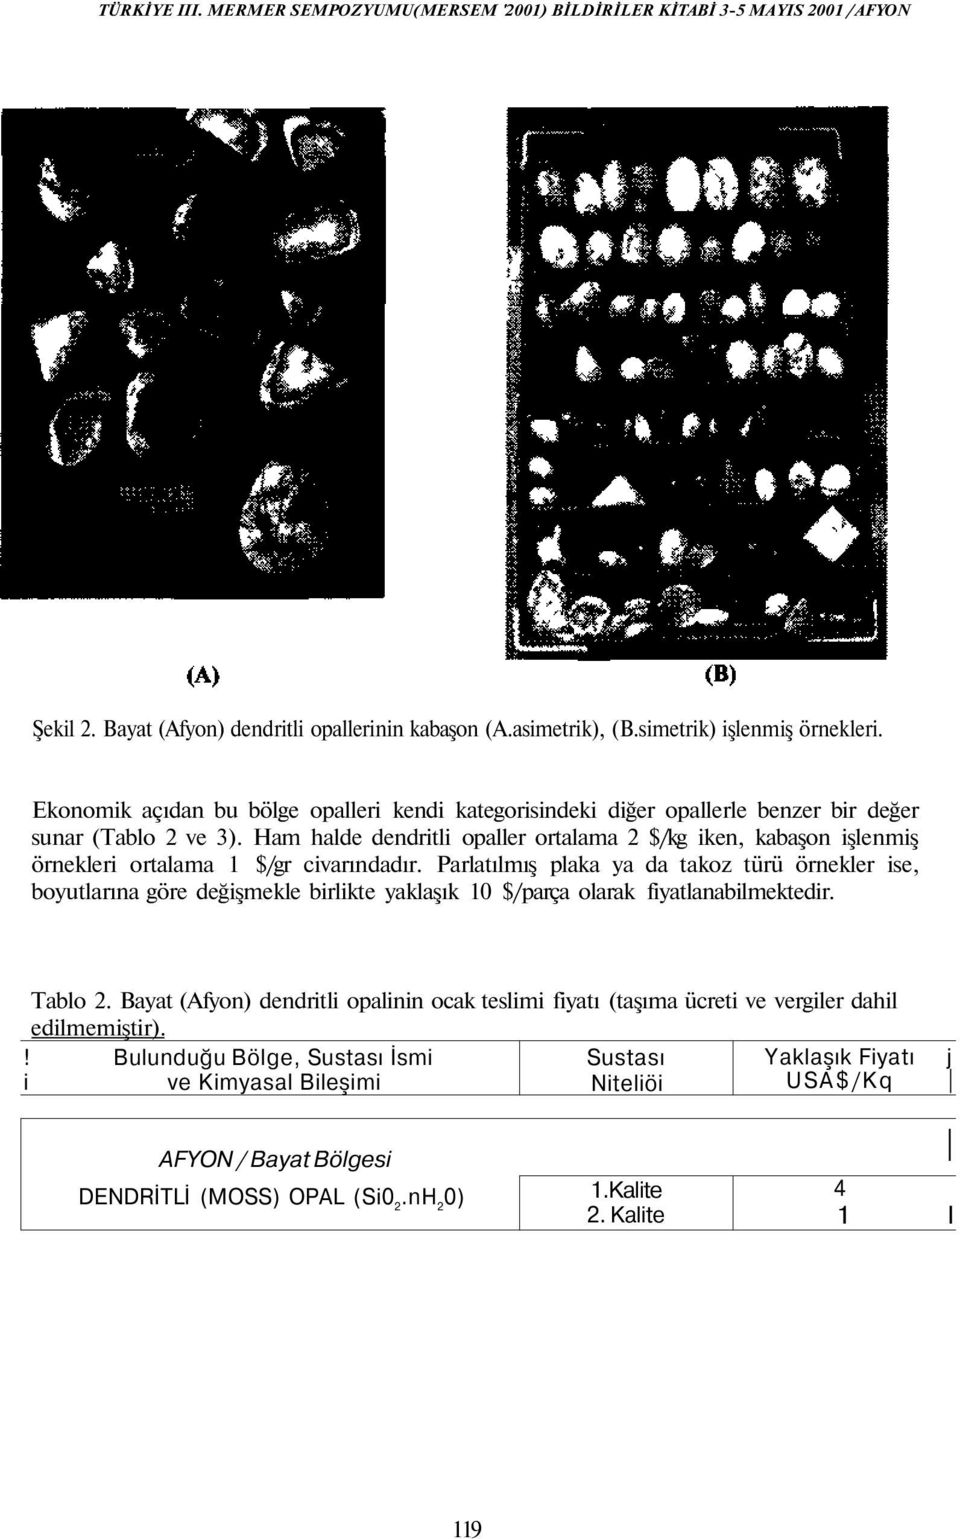 Ham halde dendritli opaller ortalama 2 $/kg iken, kabaşon işlenmiş örnekleri ortalama 1 $/gr civarındadır.